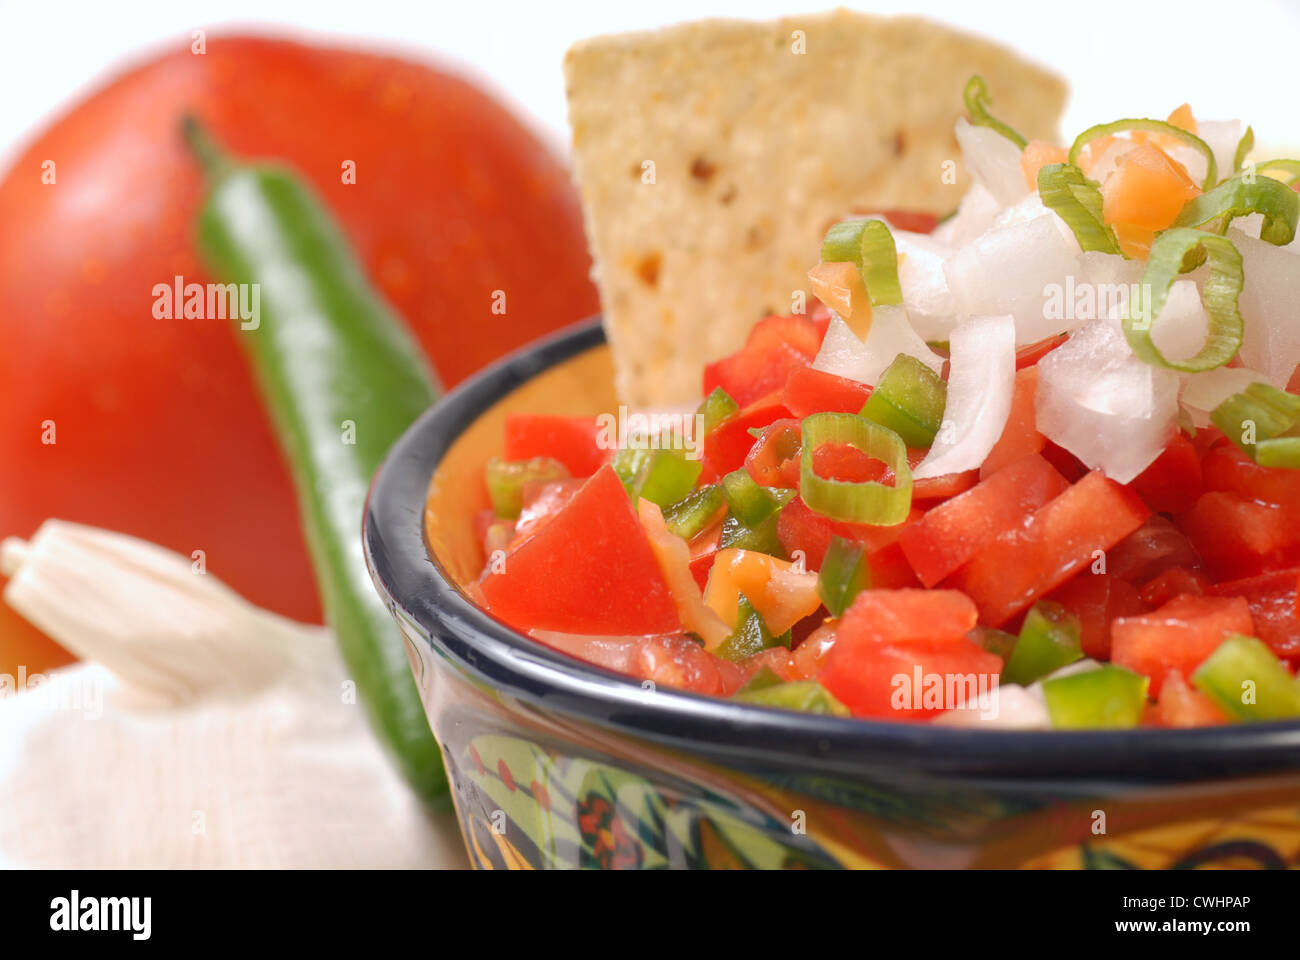 Fresco di salsa piccante con tortilla chips lungo con gli ingredienti per la salsa Foto Stock